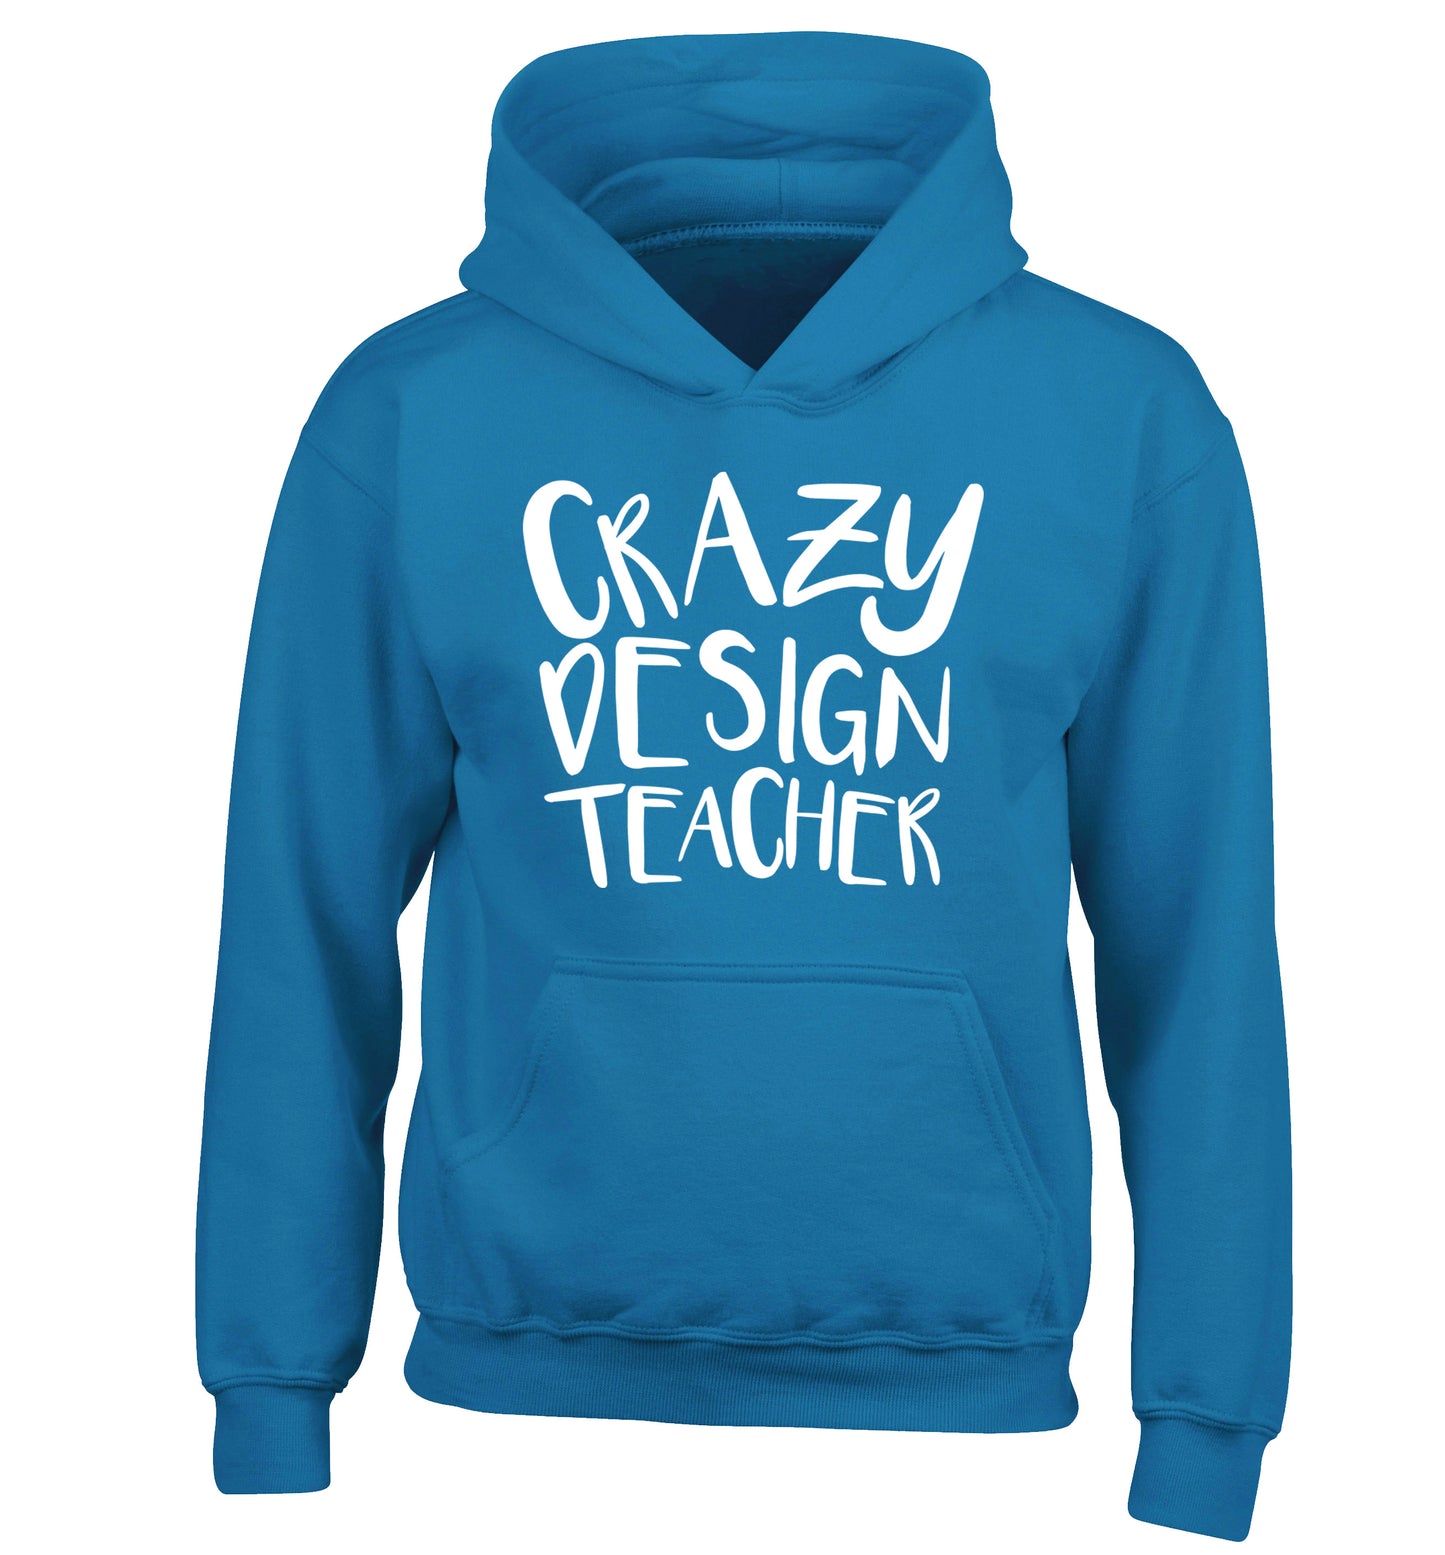 Crazy design teacher children's blue hoodie 12-13 Years